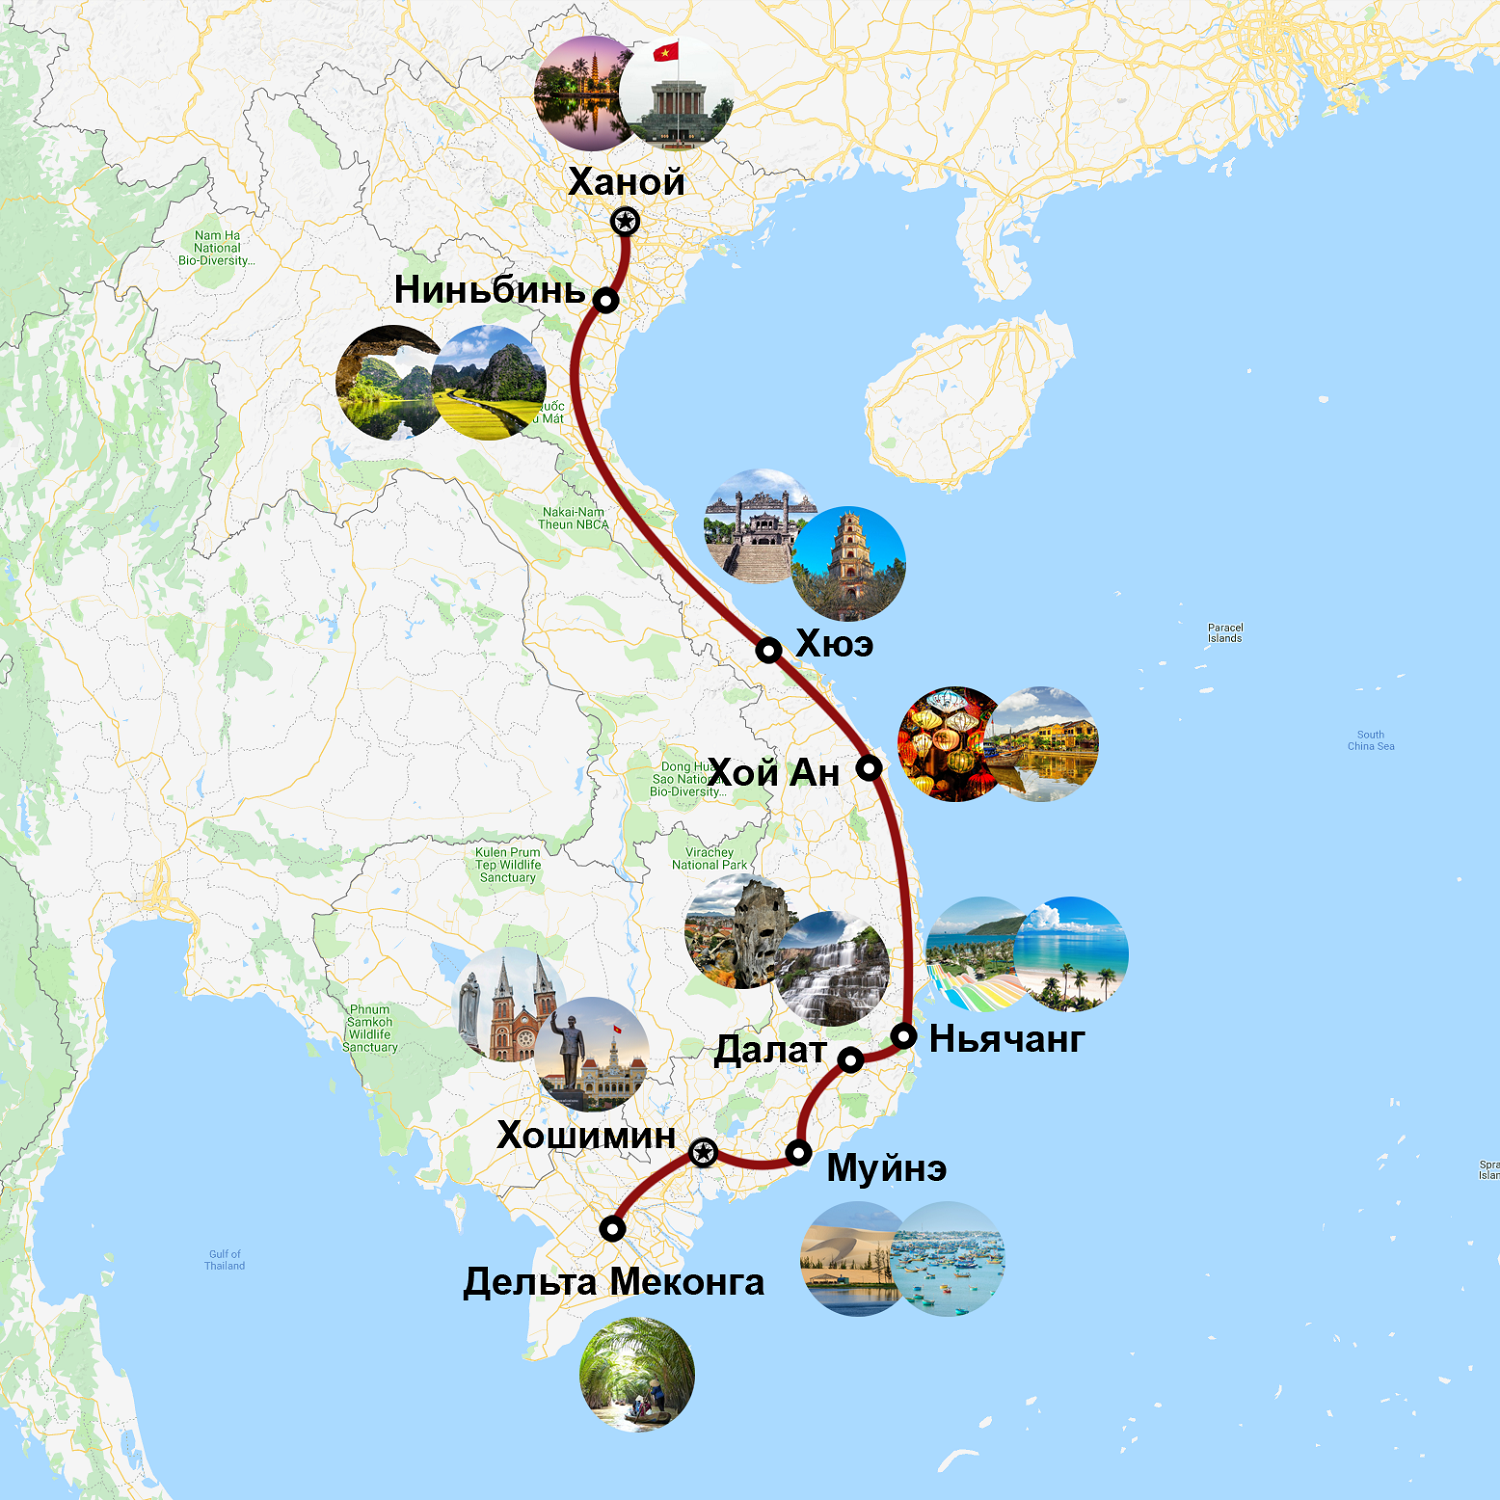 Тур карта Вьетнам. Достопримечательности Вьетнама на карте. Вьетнам карта дорог. Ханой - Нинь Бинь.